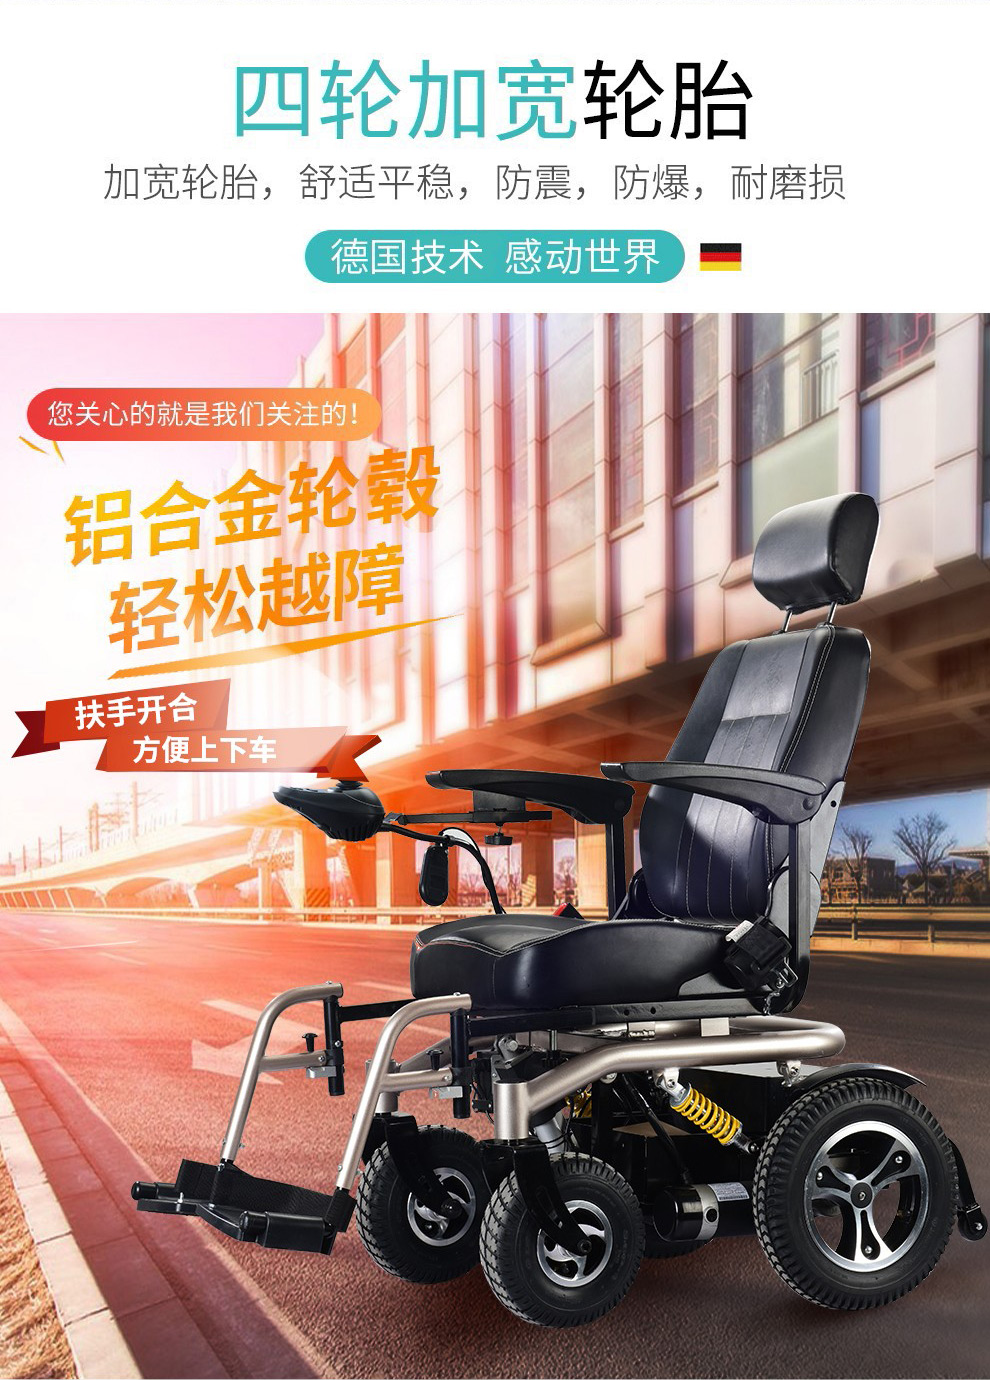 残疾人电动轮椅 电磁刹车 锂电池50安(超大续航)【图片 价格 品牌